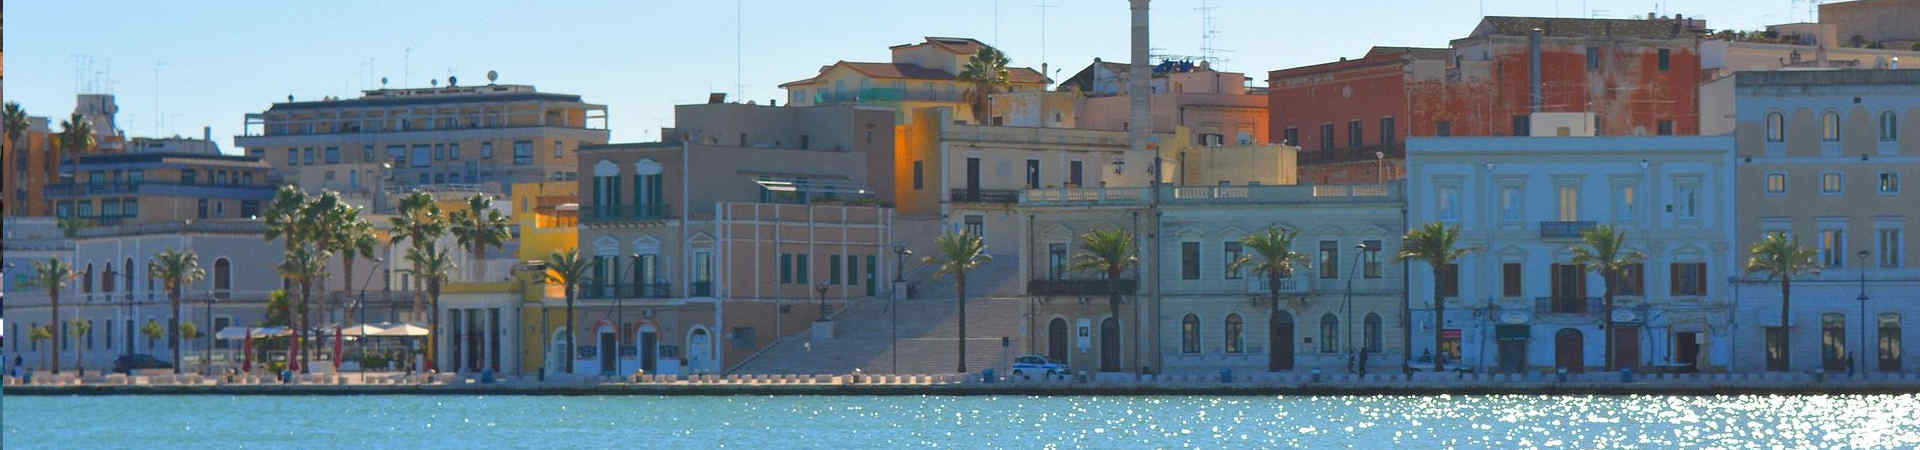 Image ressource du port de destination Brindisi pour l'itinéraire du ferry Patras - Brindisi